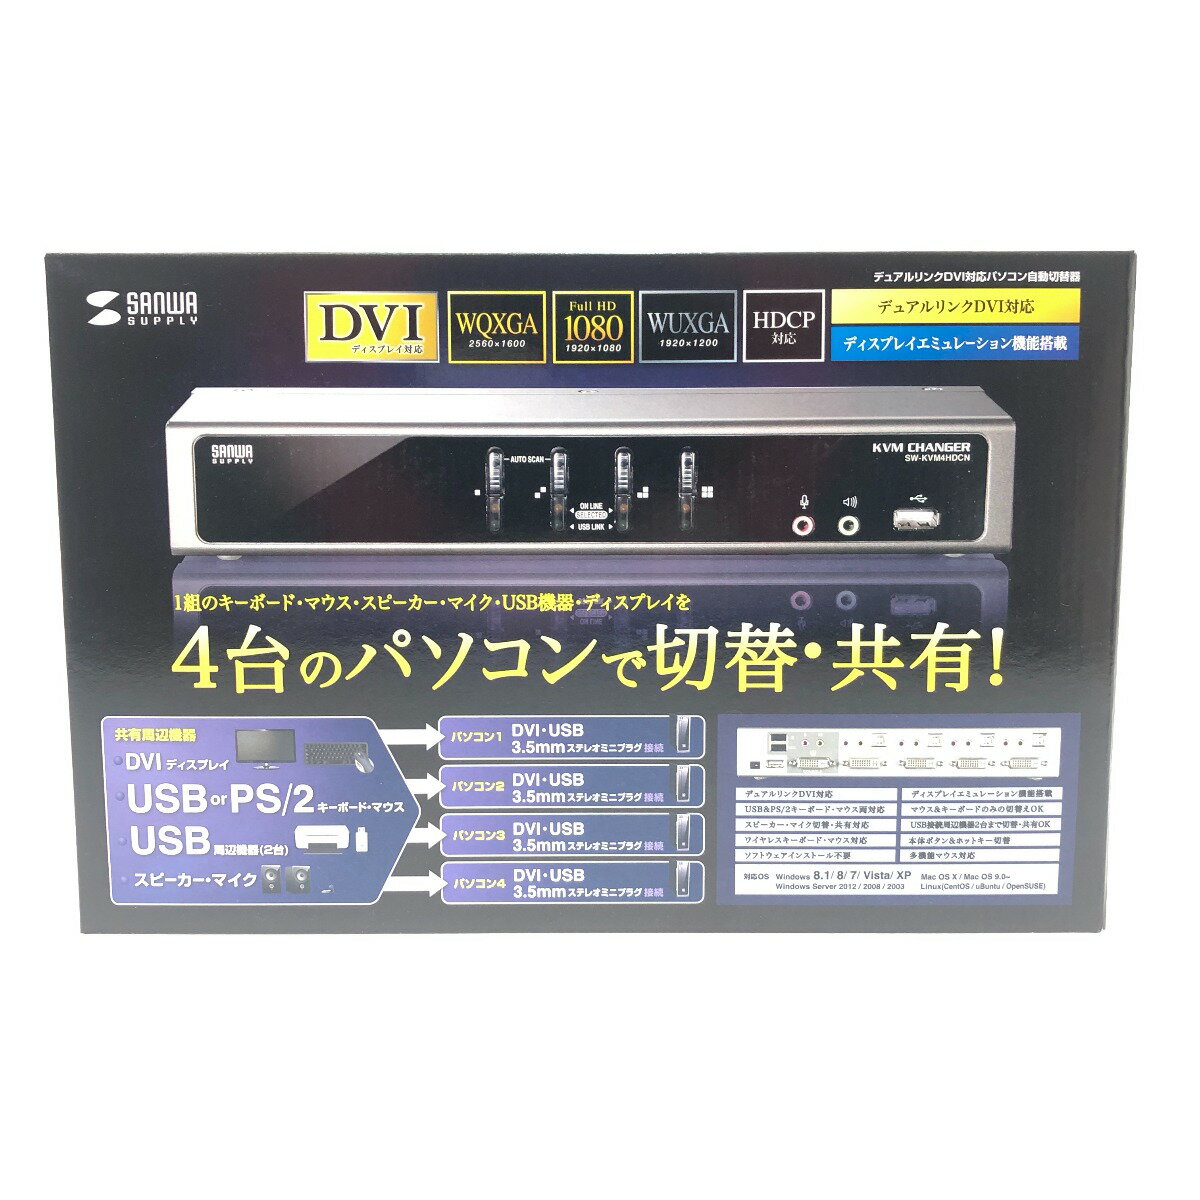 □□【中古】サンワサプライ パソコン PC周辺機器 パソコン自動切替器 SW-KVM4HDCN Sランク